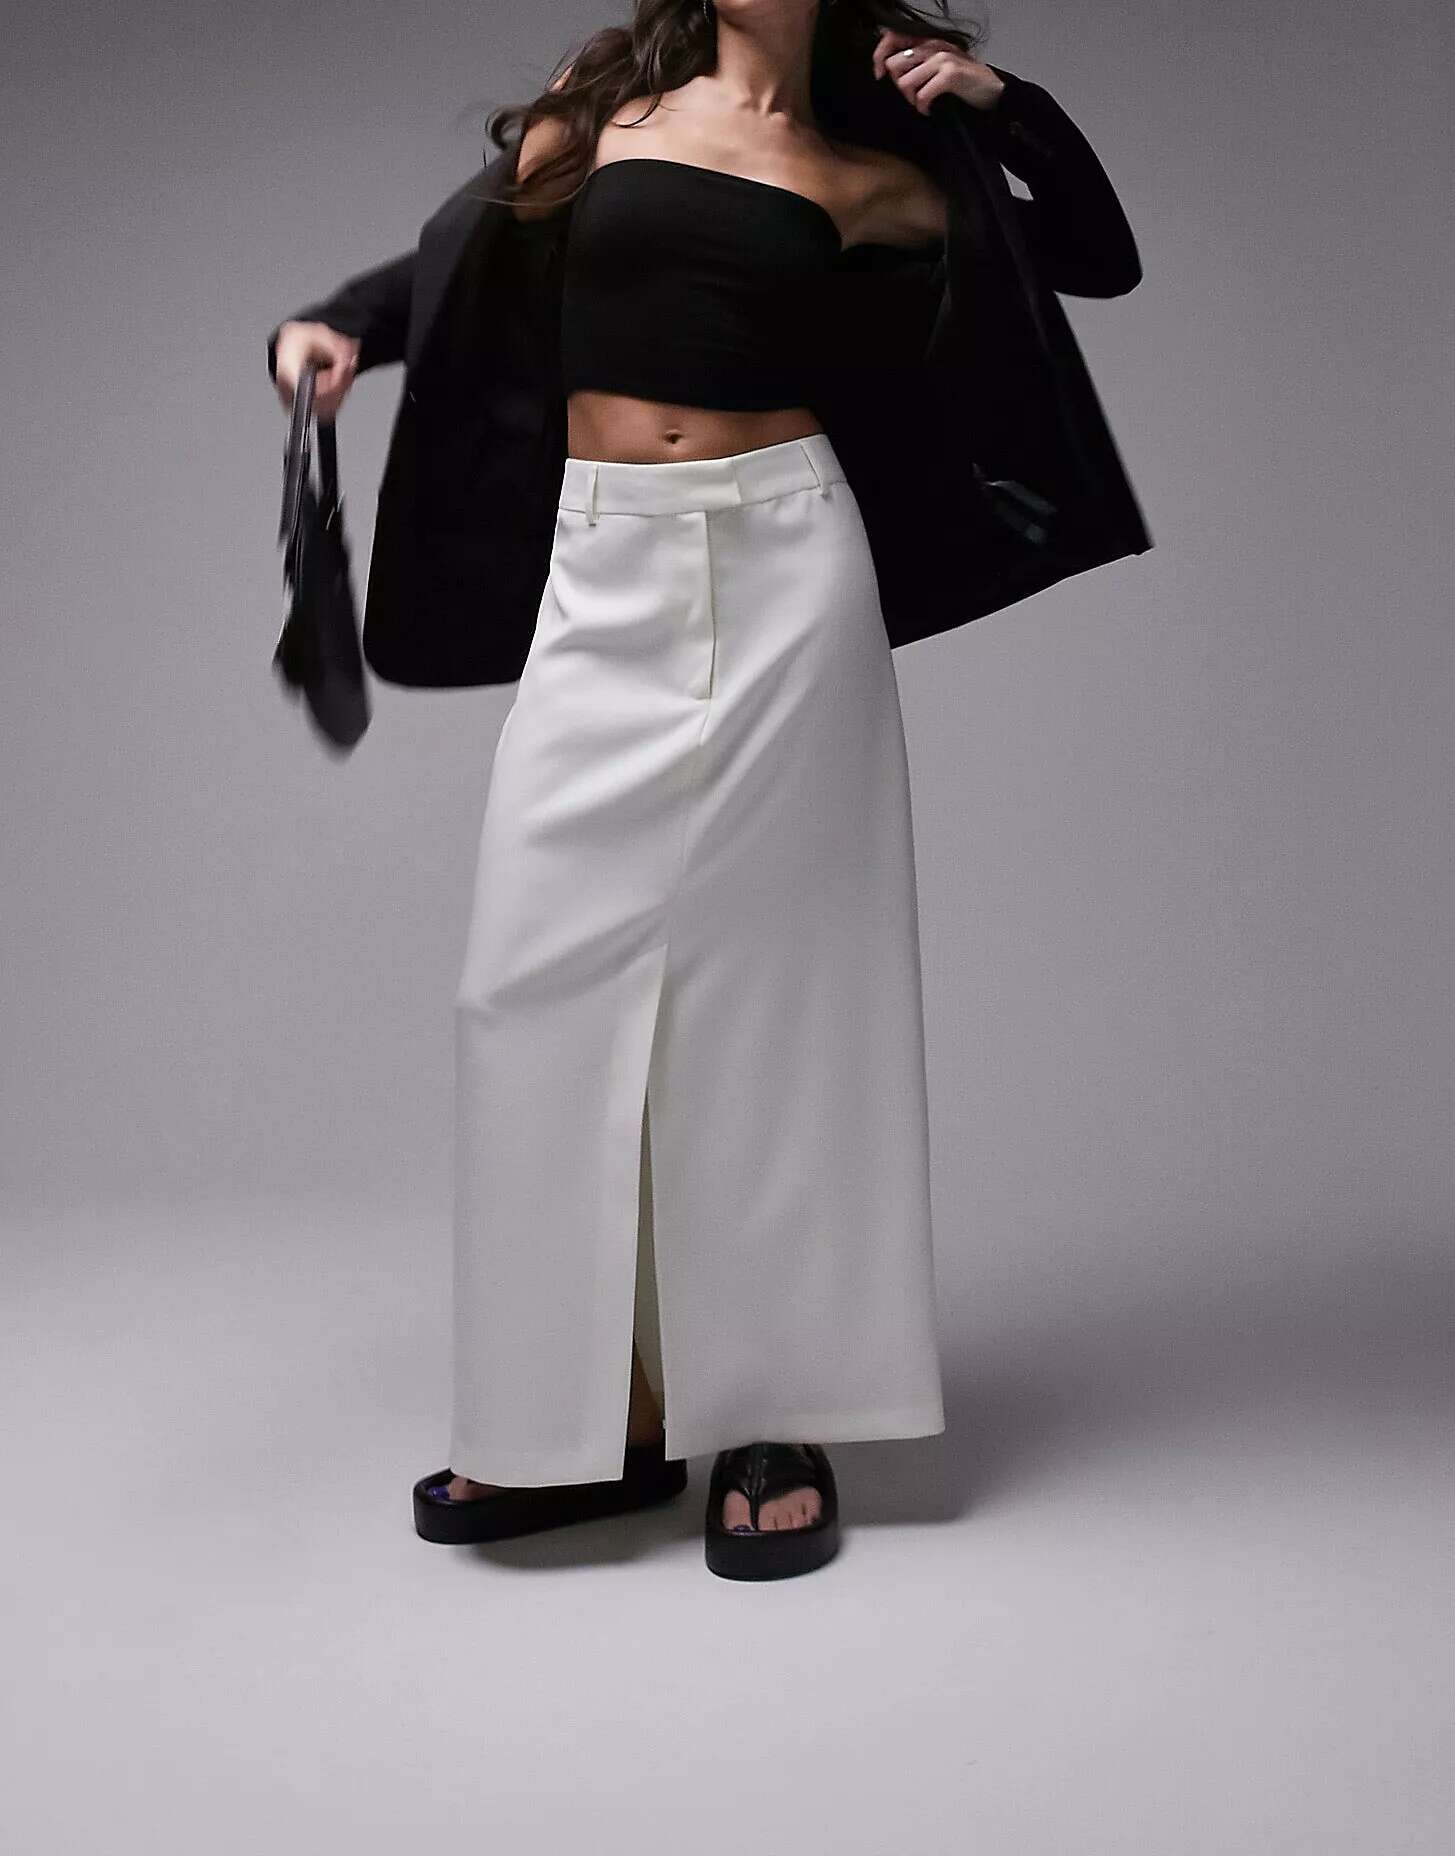 Кремовая юбка мидакси в стиле 90-х годов Topshop новая стильная винтажная нижняя юбка в стиле ретро 50 х годов пышная юбка в стиле рокабилли